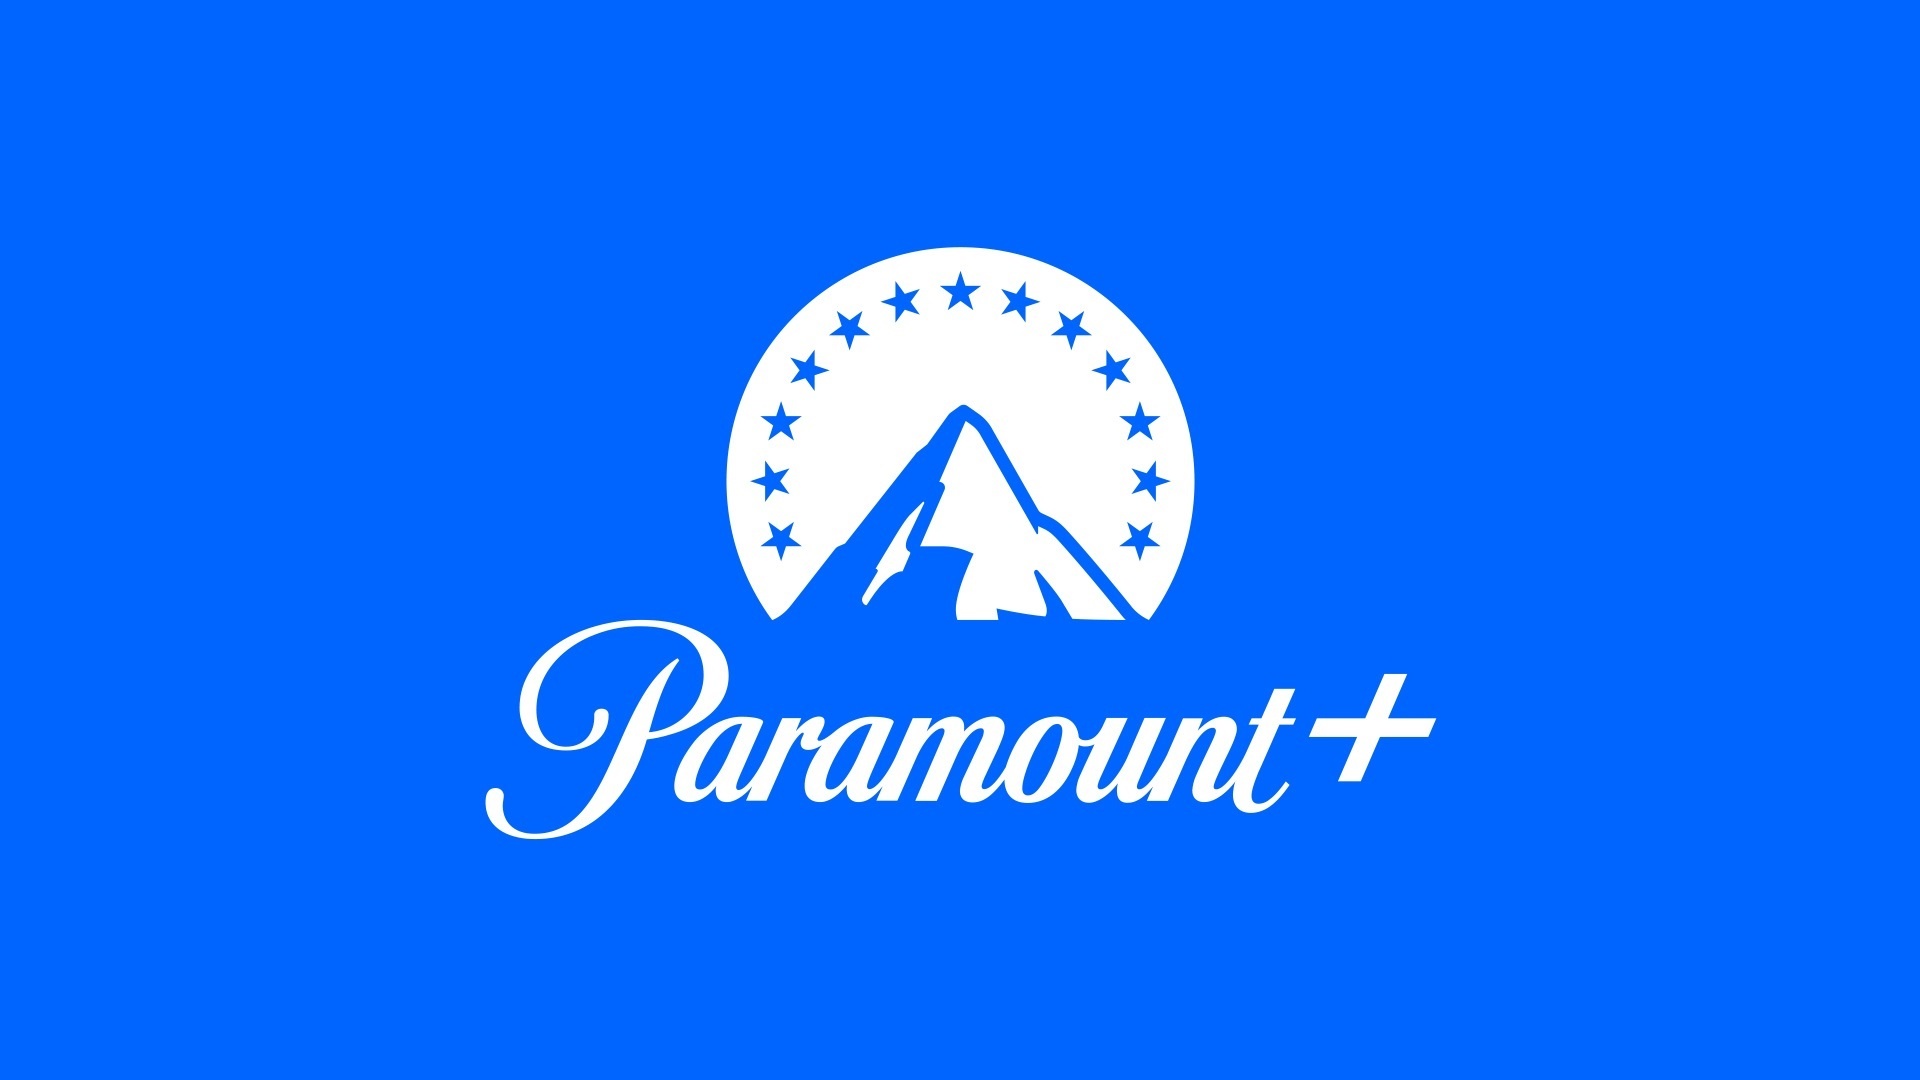 Paramount, New releases, June lineup, Evil season 3, 1920x1080 Full HD Desktop